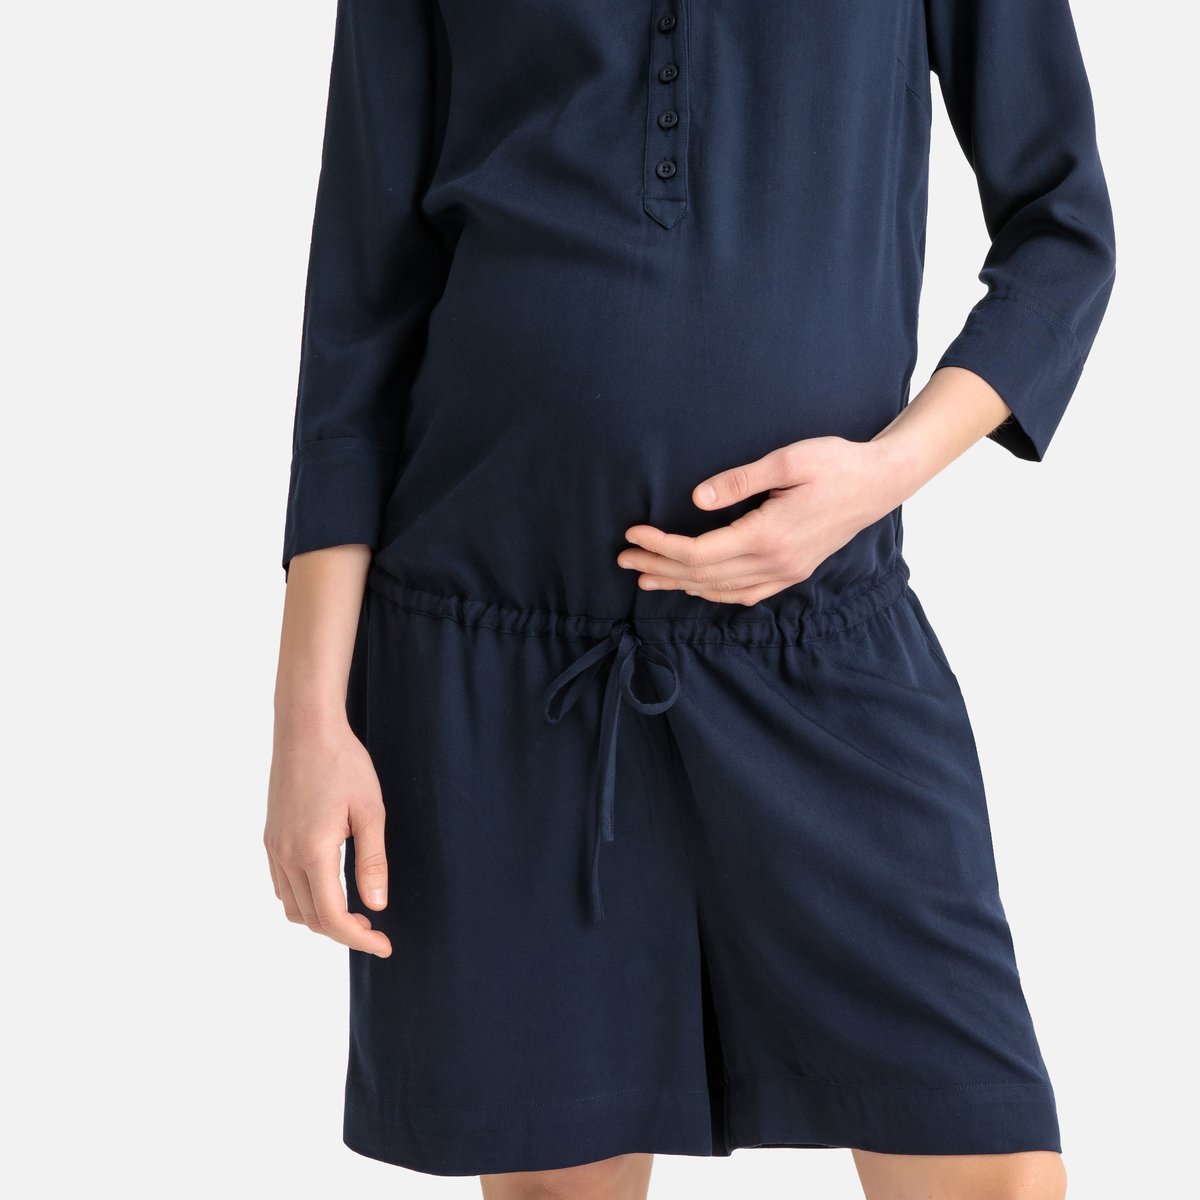 Комбинезон La Redoute С шортами для периода беременности 38 (FR) - 44 (RUS) синий, размер 38 (FR) - 44 (RUS) С шортами для периода беременности 38 (FR) - 44 (RUS) синий - фото 3